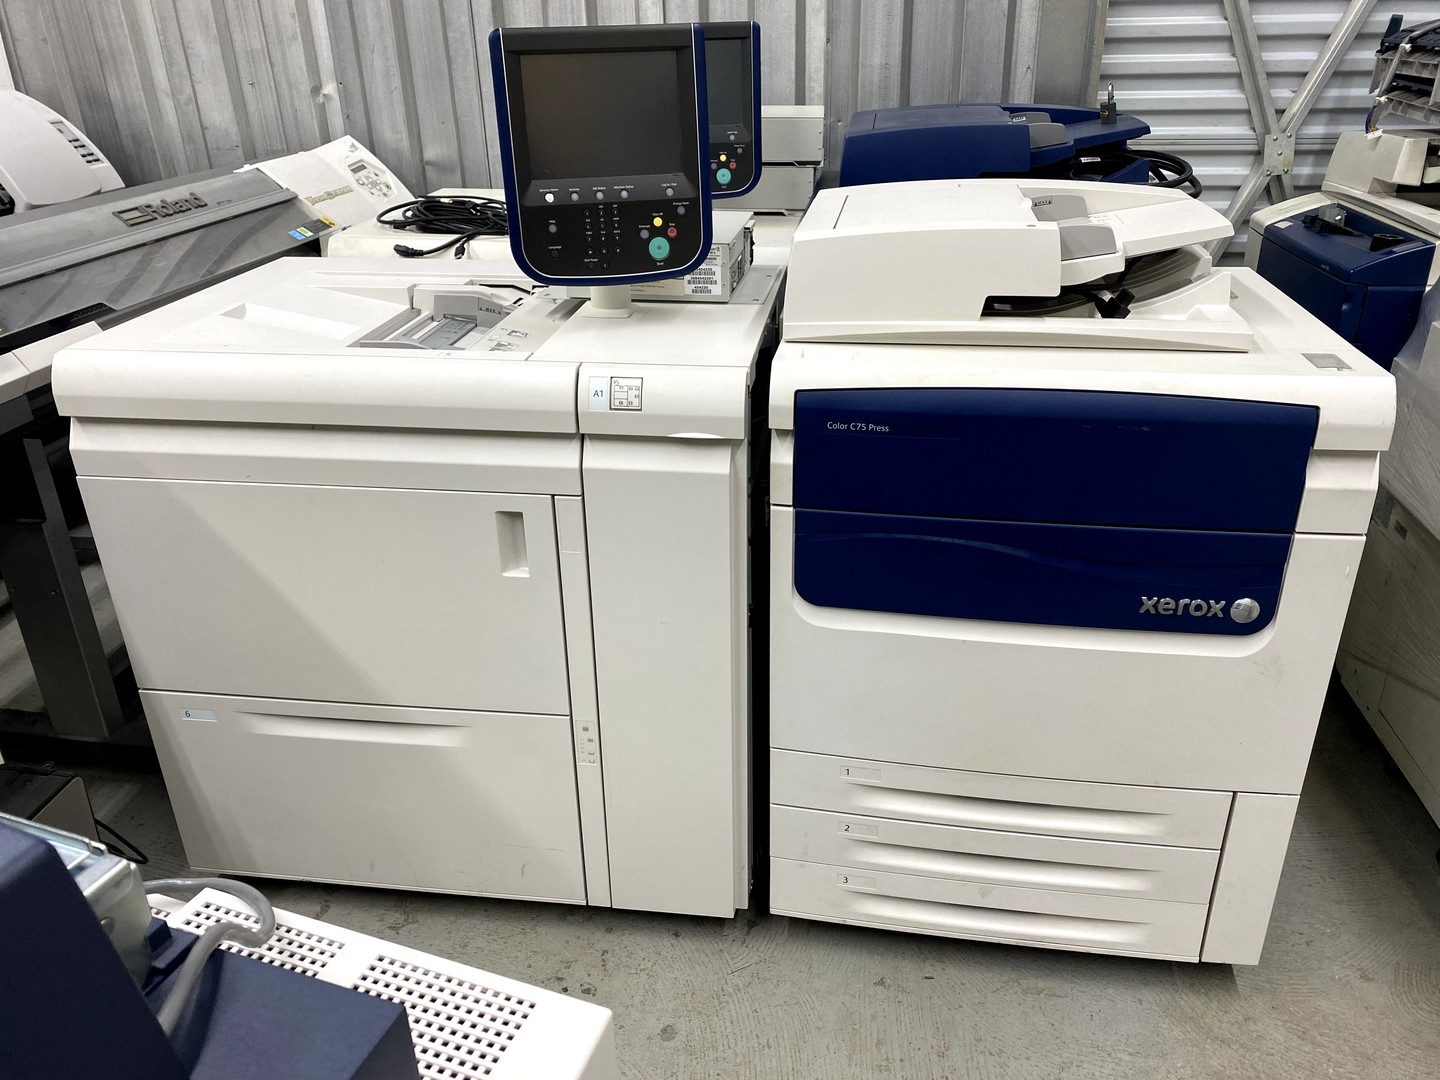 impresoras y scanners - copiadora color xerox C75press 2